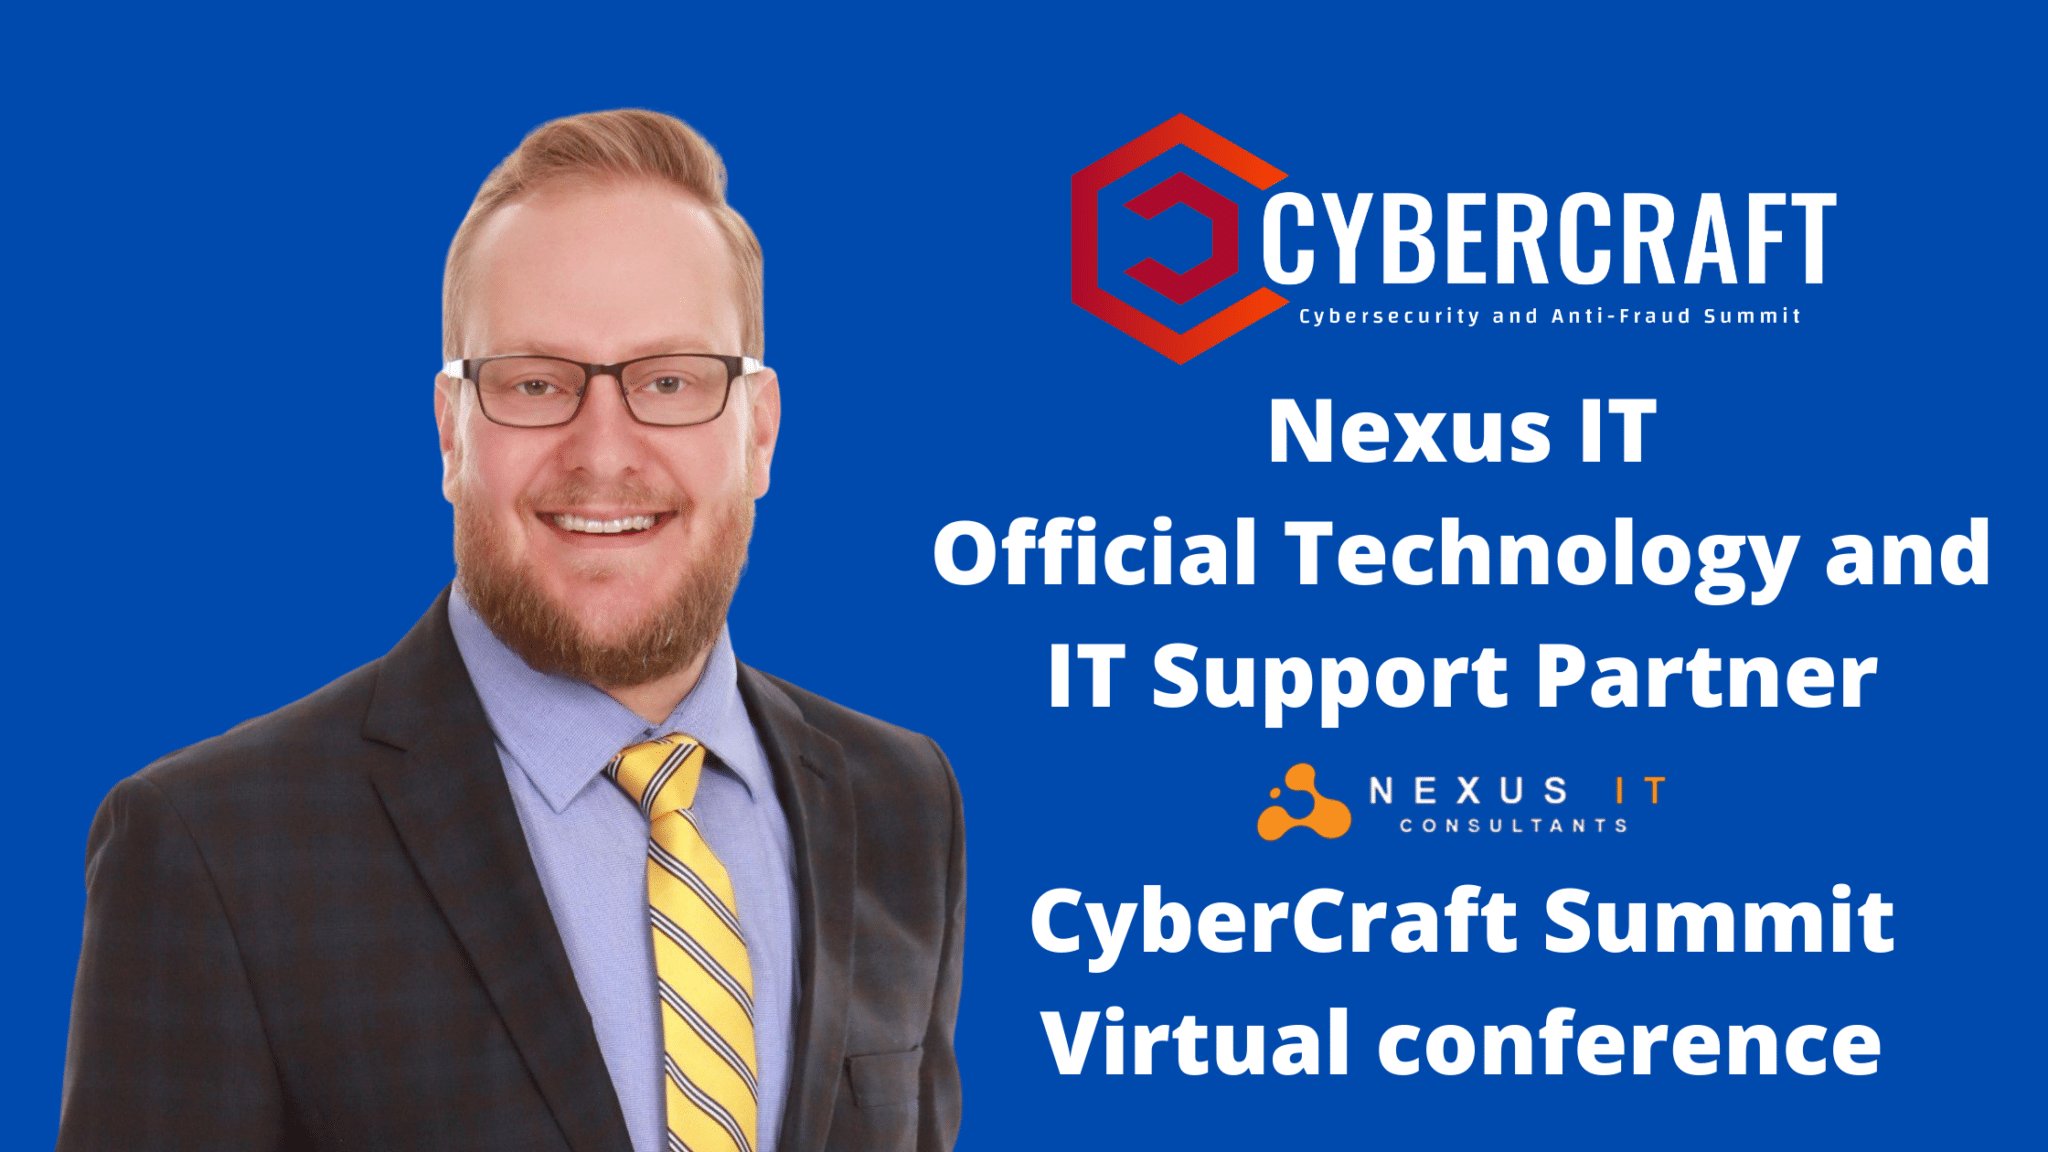 CyberCraft Summit Virtual Conference